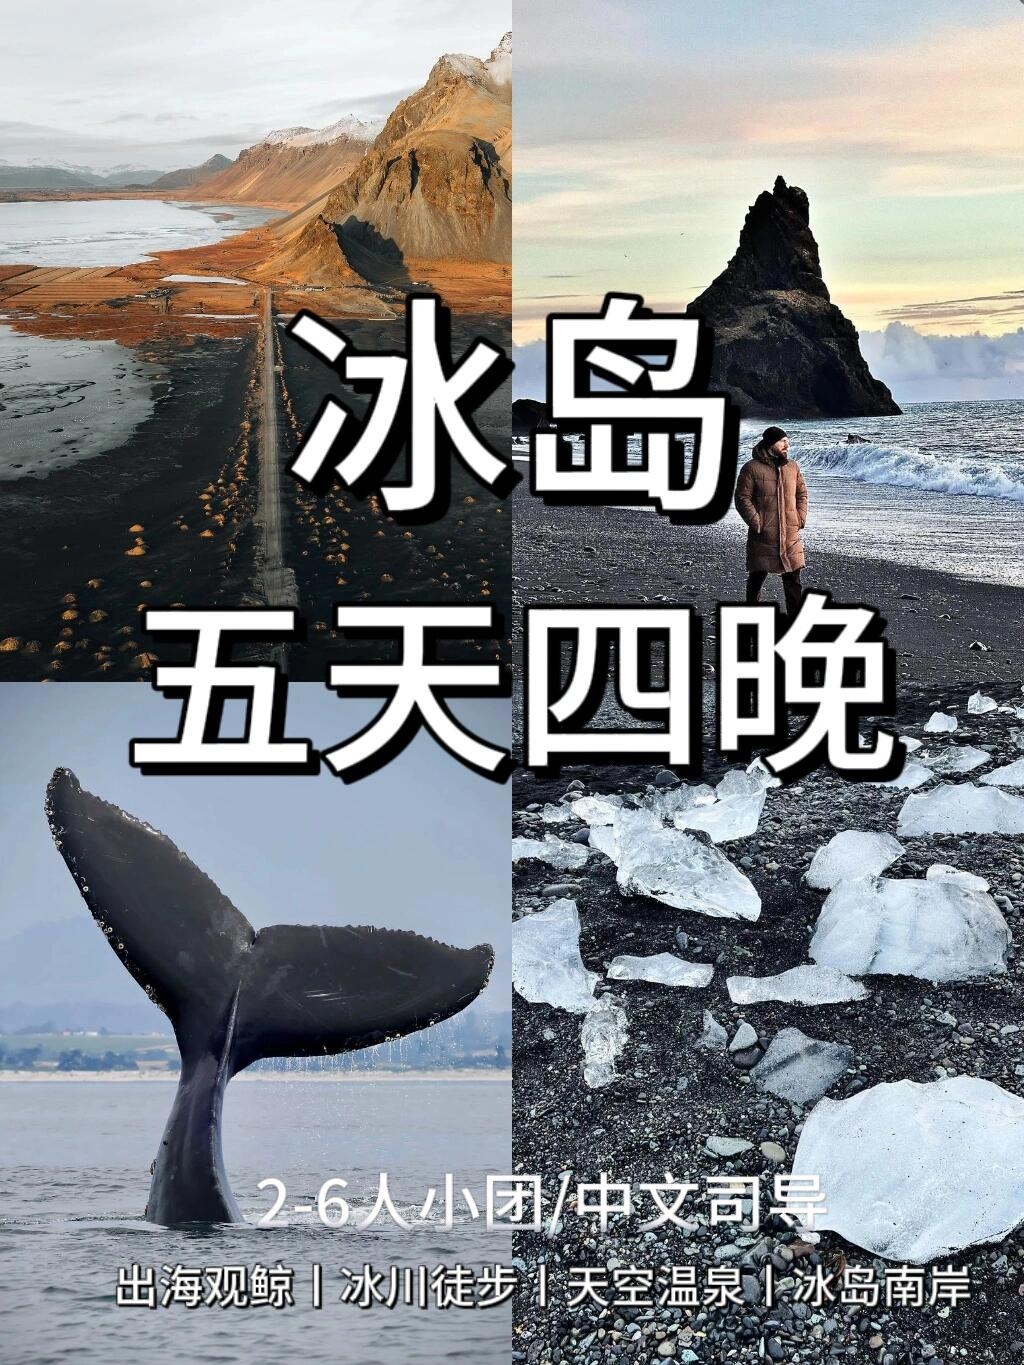 冰岛夏季经典5日游❗观鲸➕冰川徒步观世界，